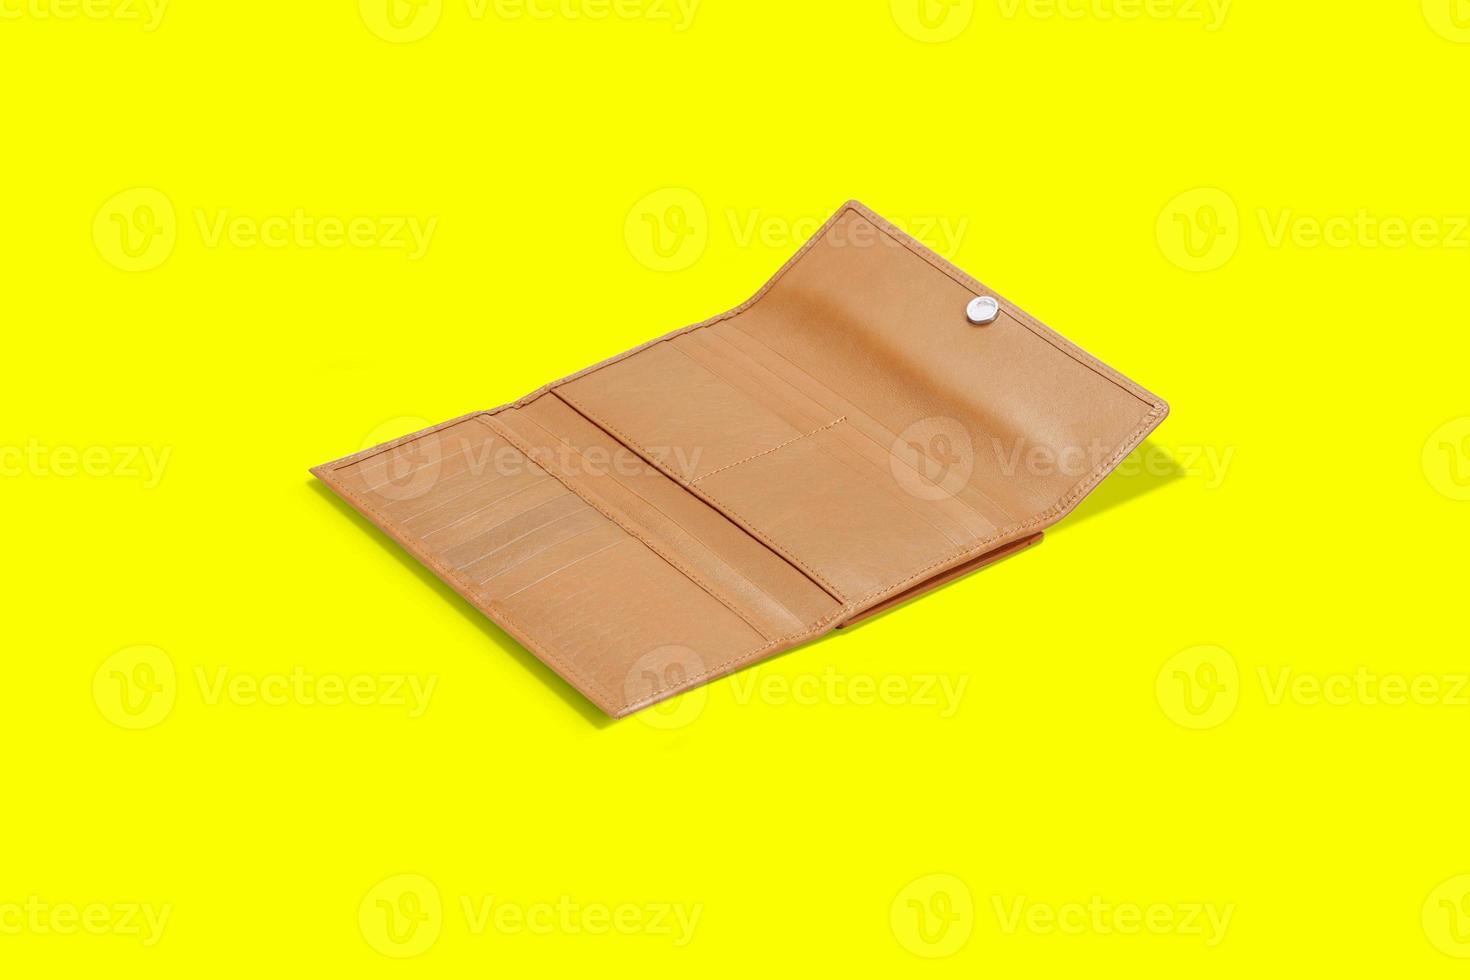 fashionabla läder kvinnors plånbok på en gul bakgrund. lagt till kopieringsutrymme för text. foto